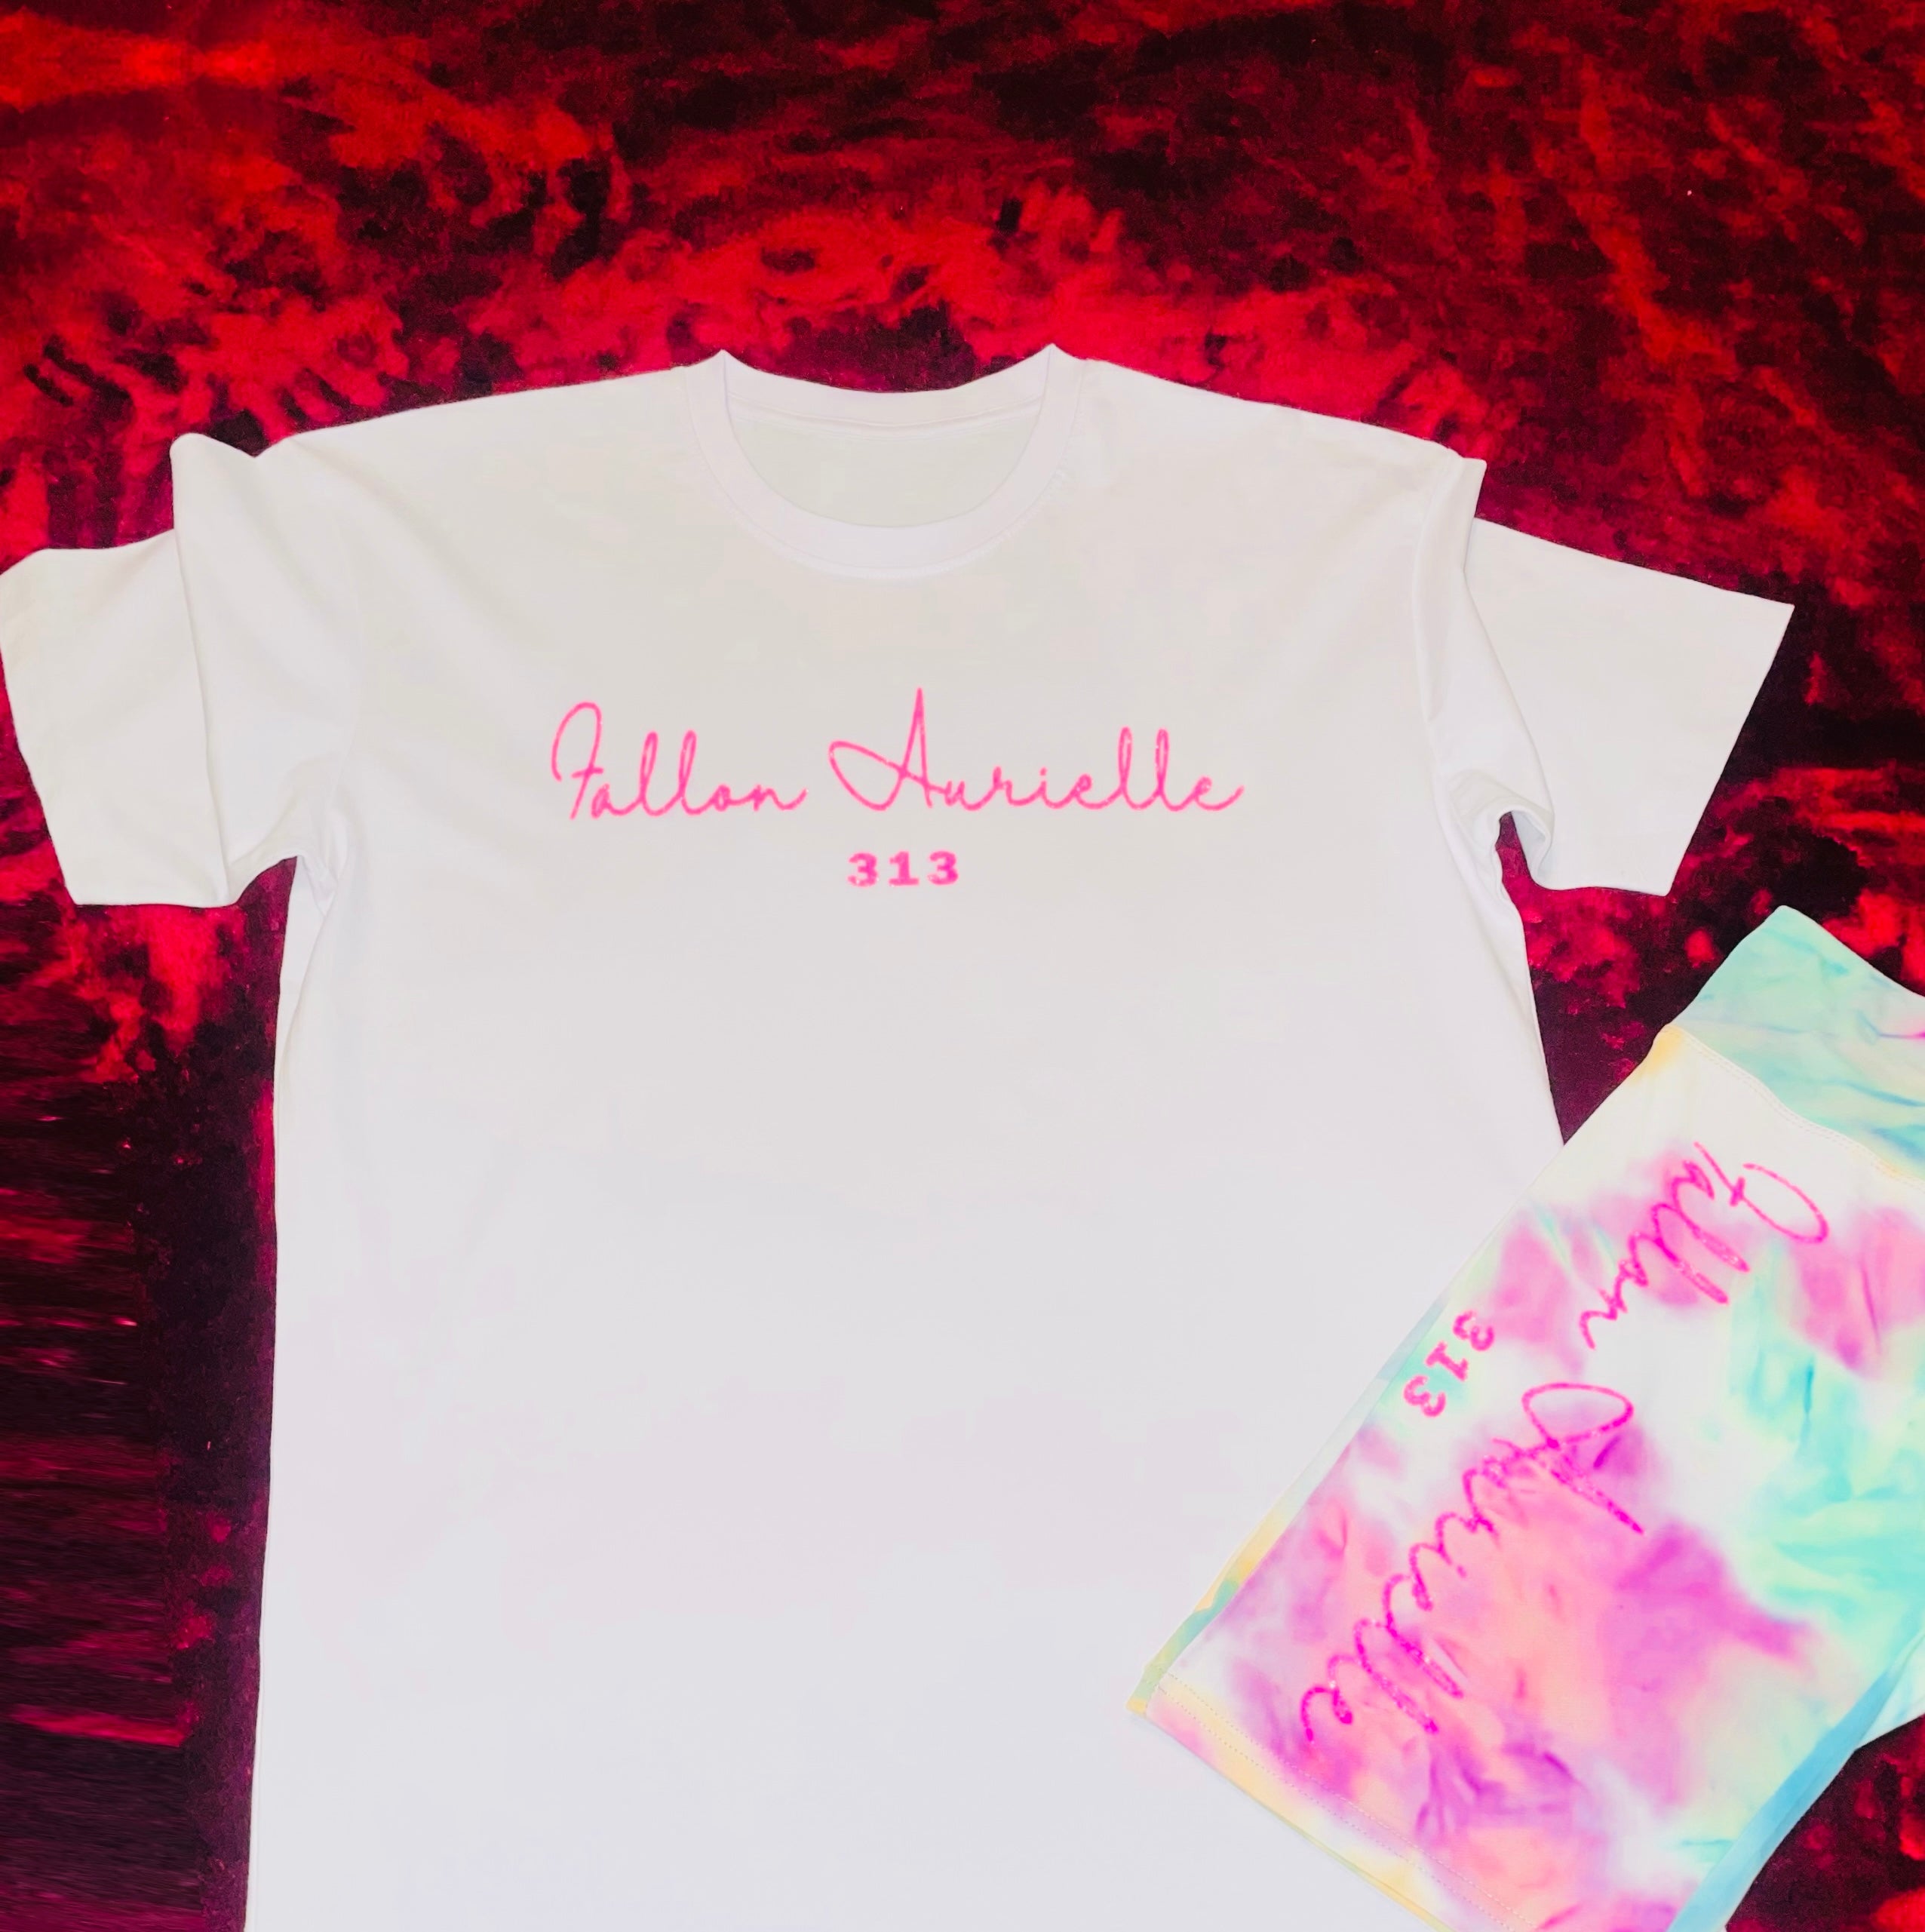 Fallon Aurielle Signature 313 Tie Dye Biker Short Set (White, Pink & Turquoise Tie Dye)